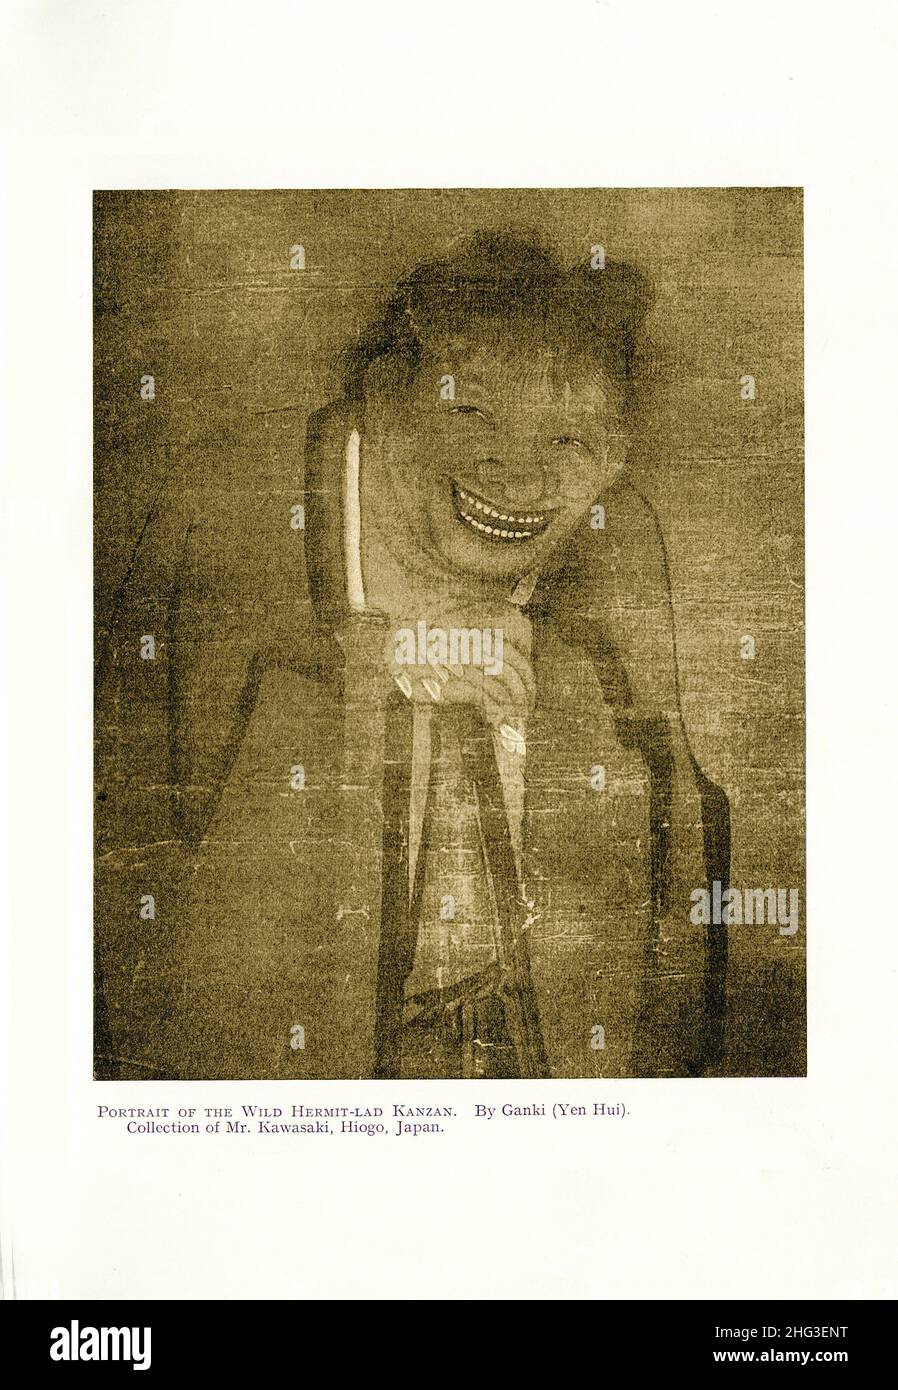 Chinesische mittelalterliche Malerei: Porträt des Wilden Einsiedler-Burschen Kanzan. Mit Dem Ganki (Yen Hui). Reproduktion der Buchillustration von 1912 Yan Hui (vereinfacht Stockfoto